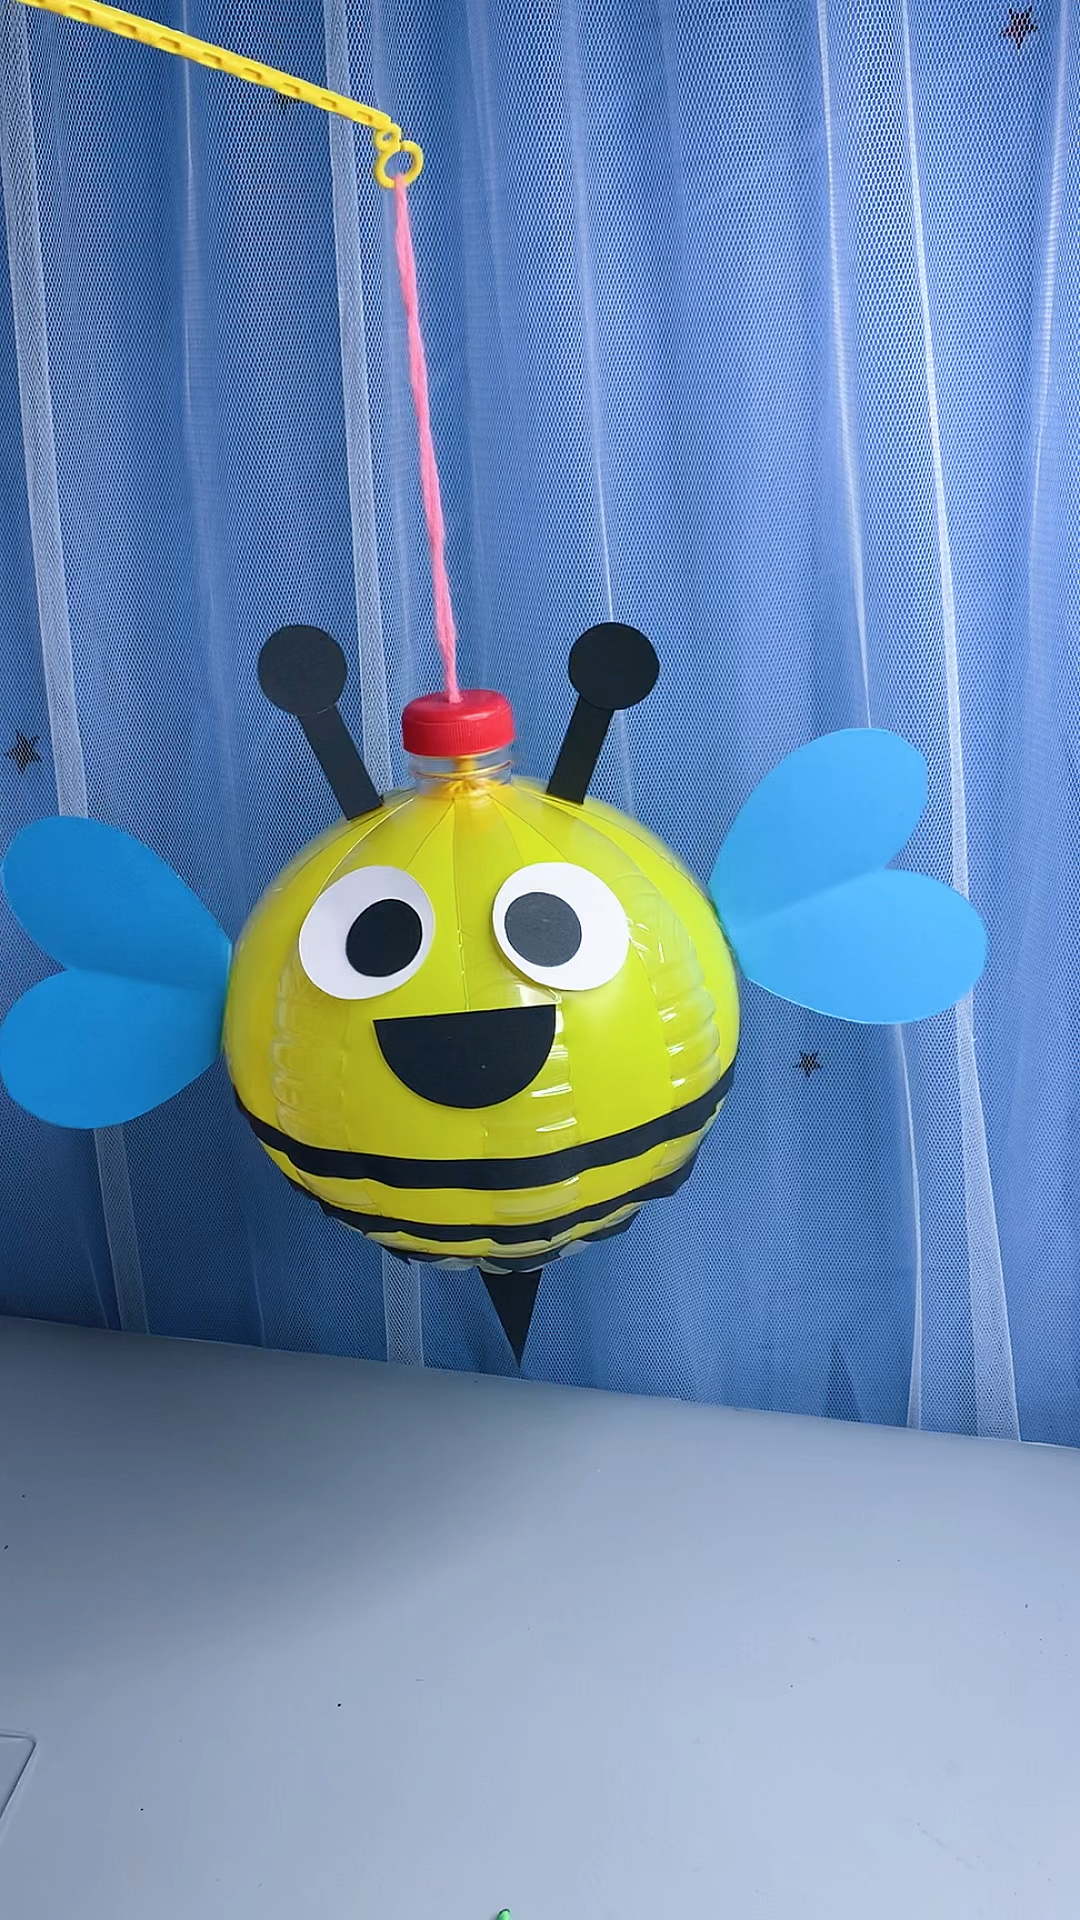 用塑料瓶和气球做一个可爱的小蜜蜂灯笼赶紧给孩子收藏吧